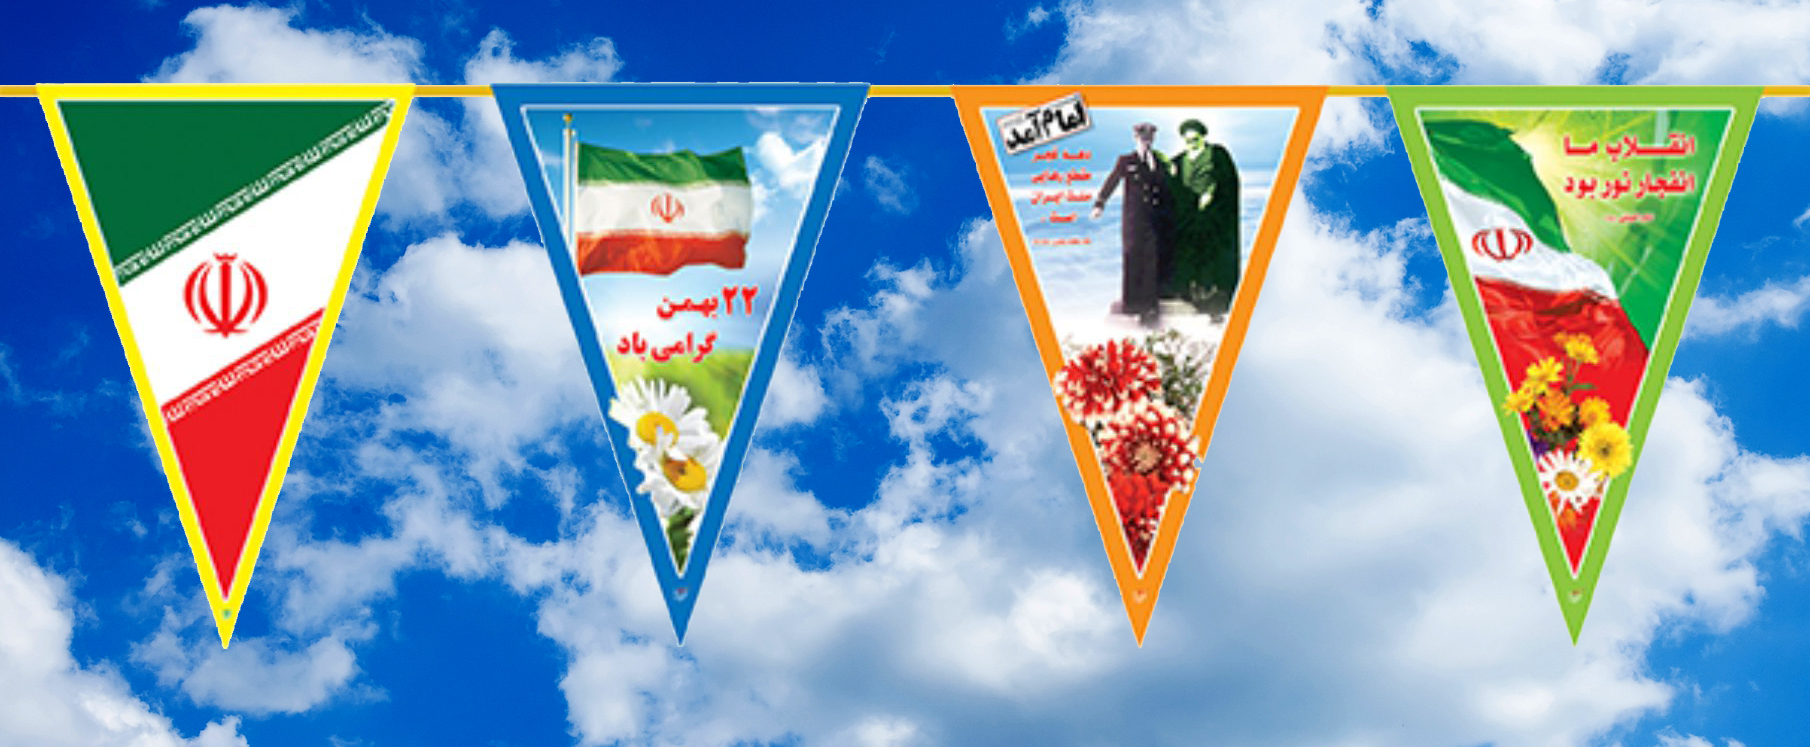 پرچم ریسه دهه فجر